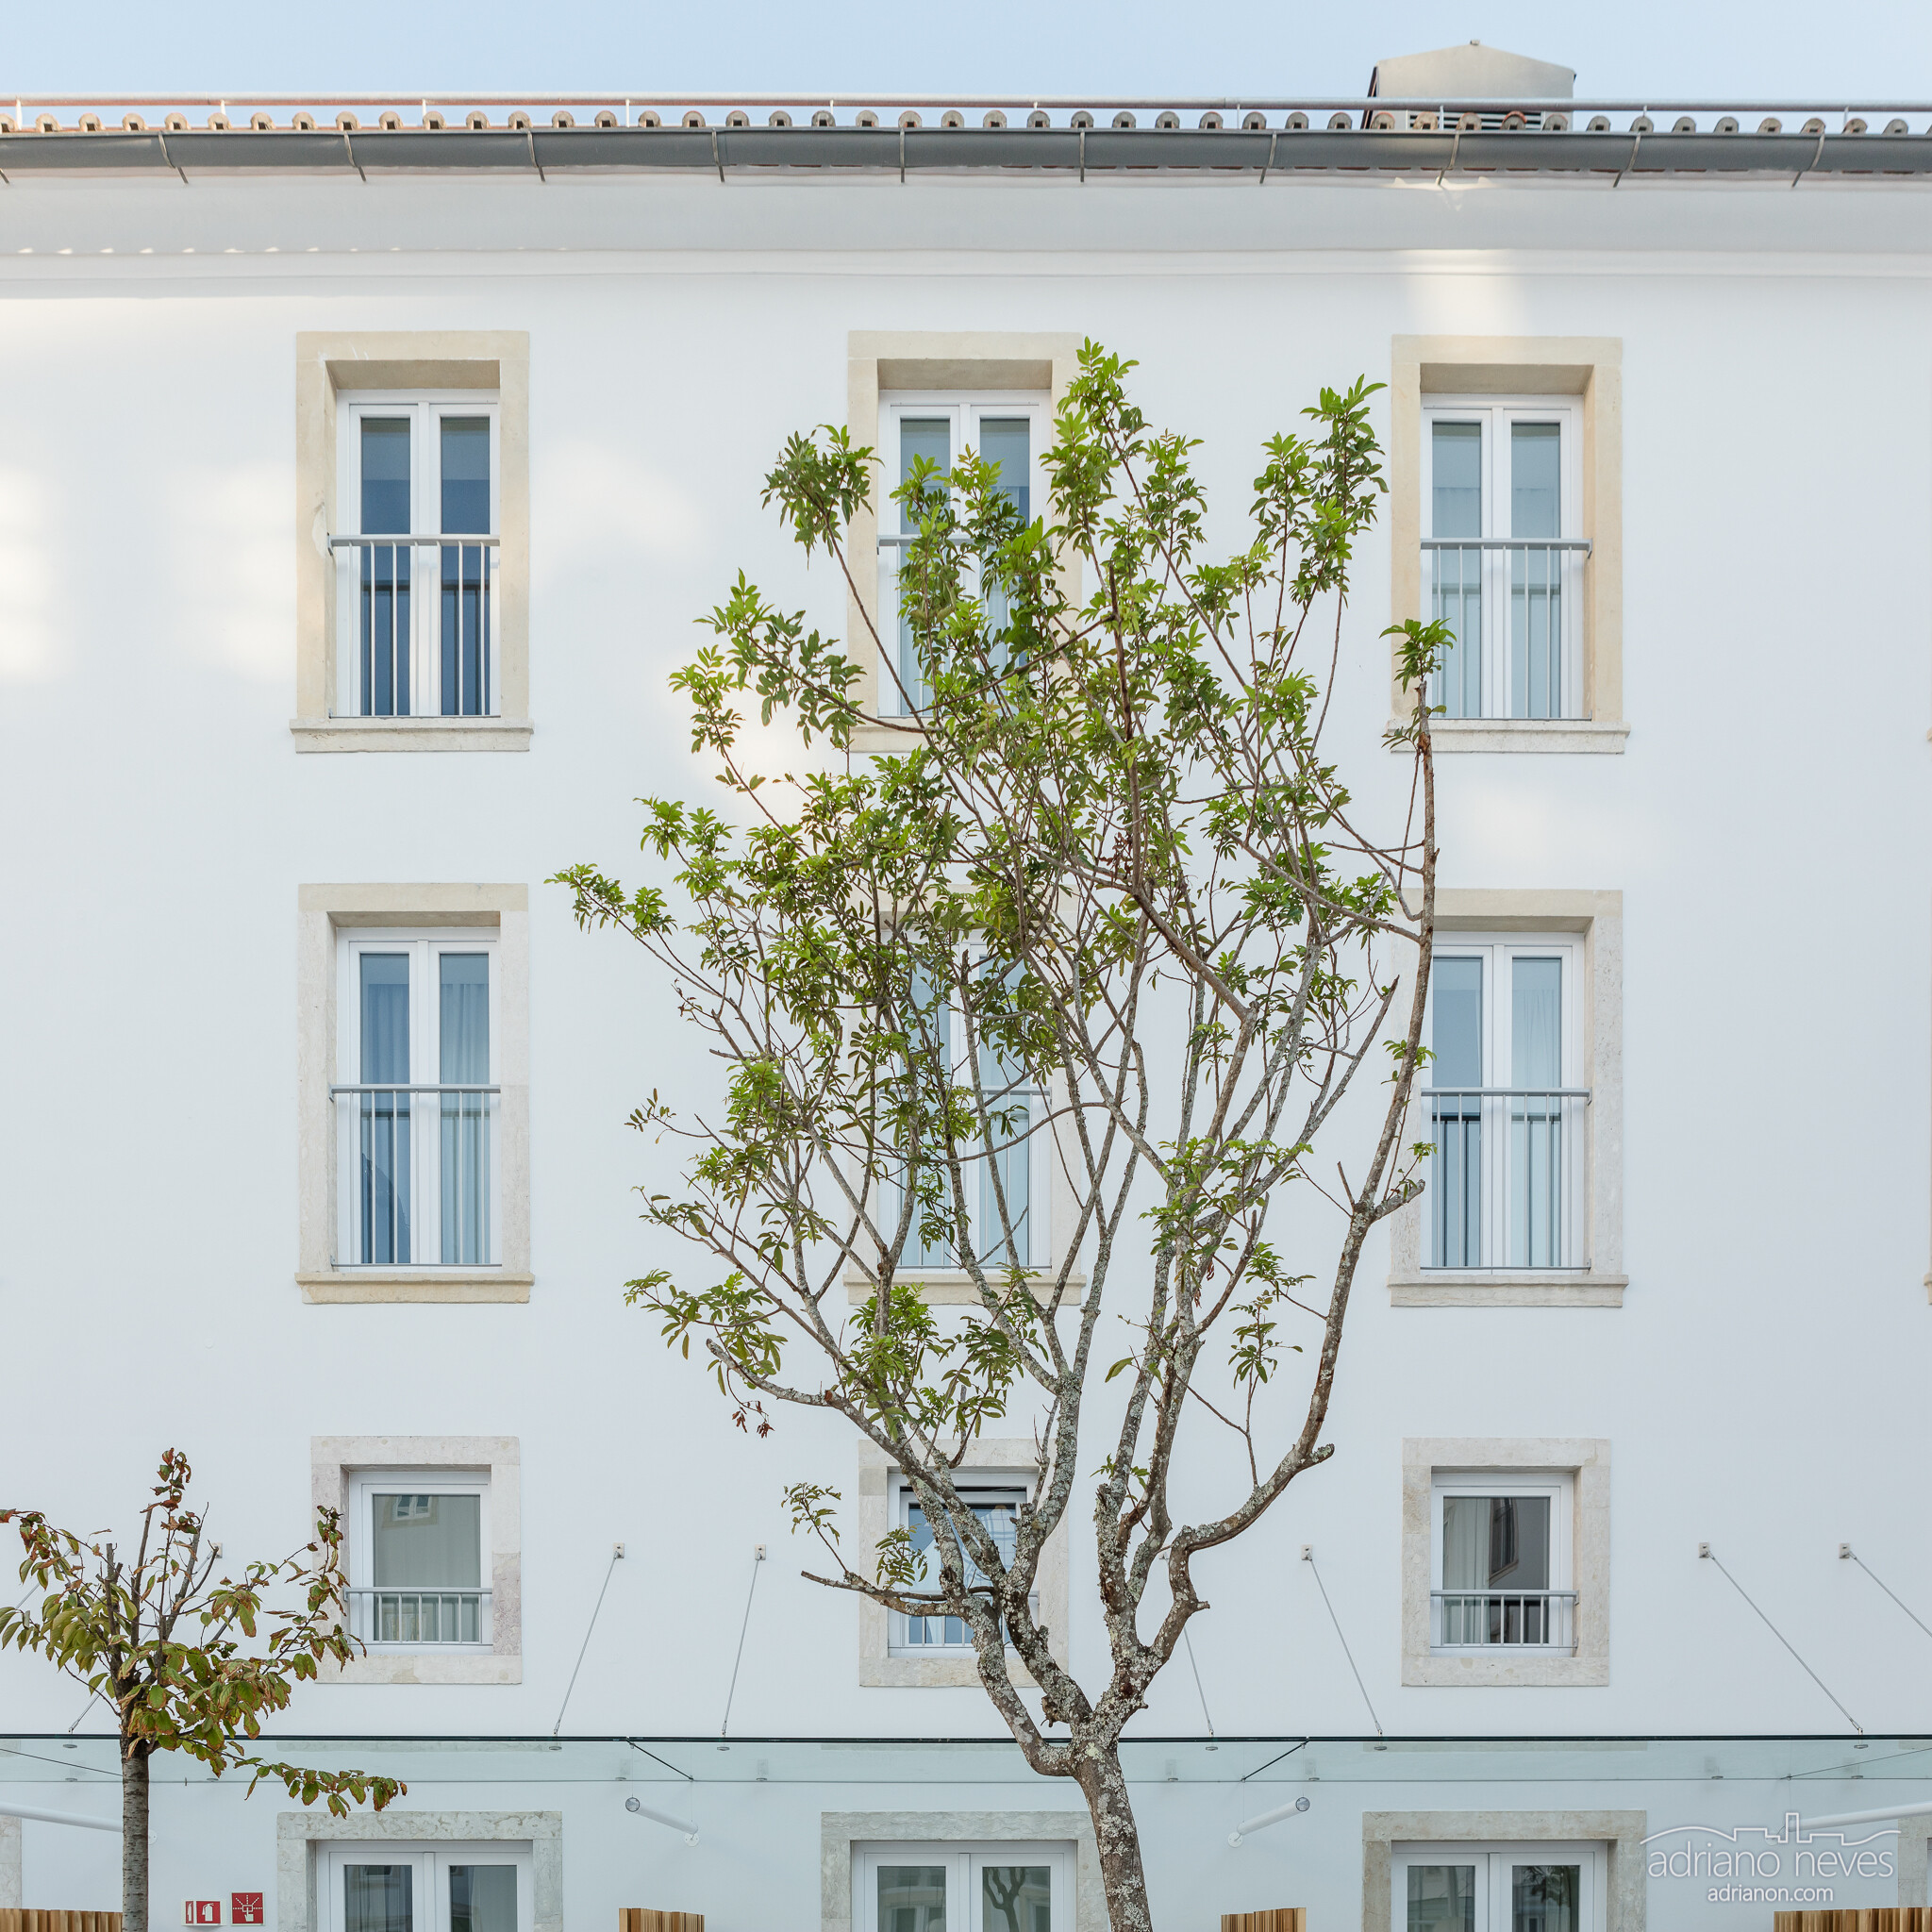 Hotel Convento do Salvador - Lisboa, Portugal - Fotografia de Arquitetura / Architectural Photography - © Adriano Neves - acseven